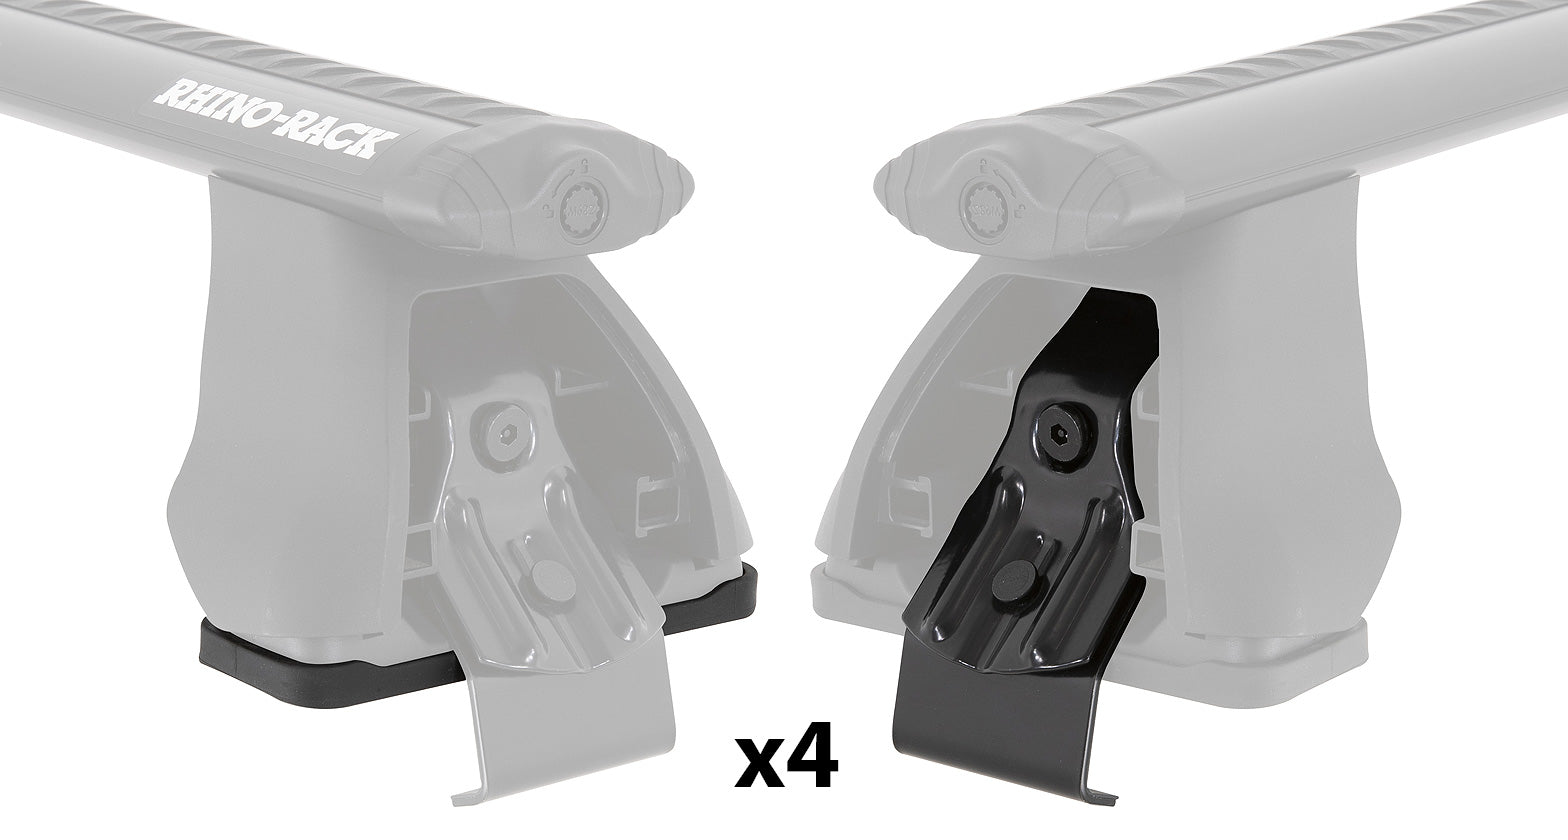 PAD & CLAMP KIT FOR RHINO 2500 MULTI FIT - DK184